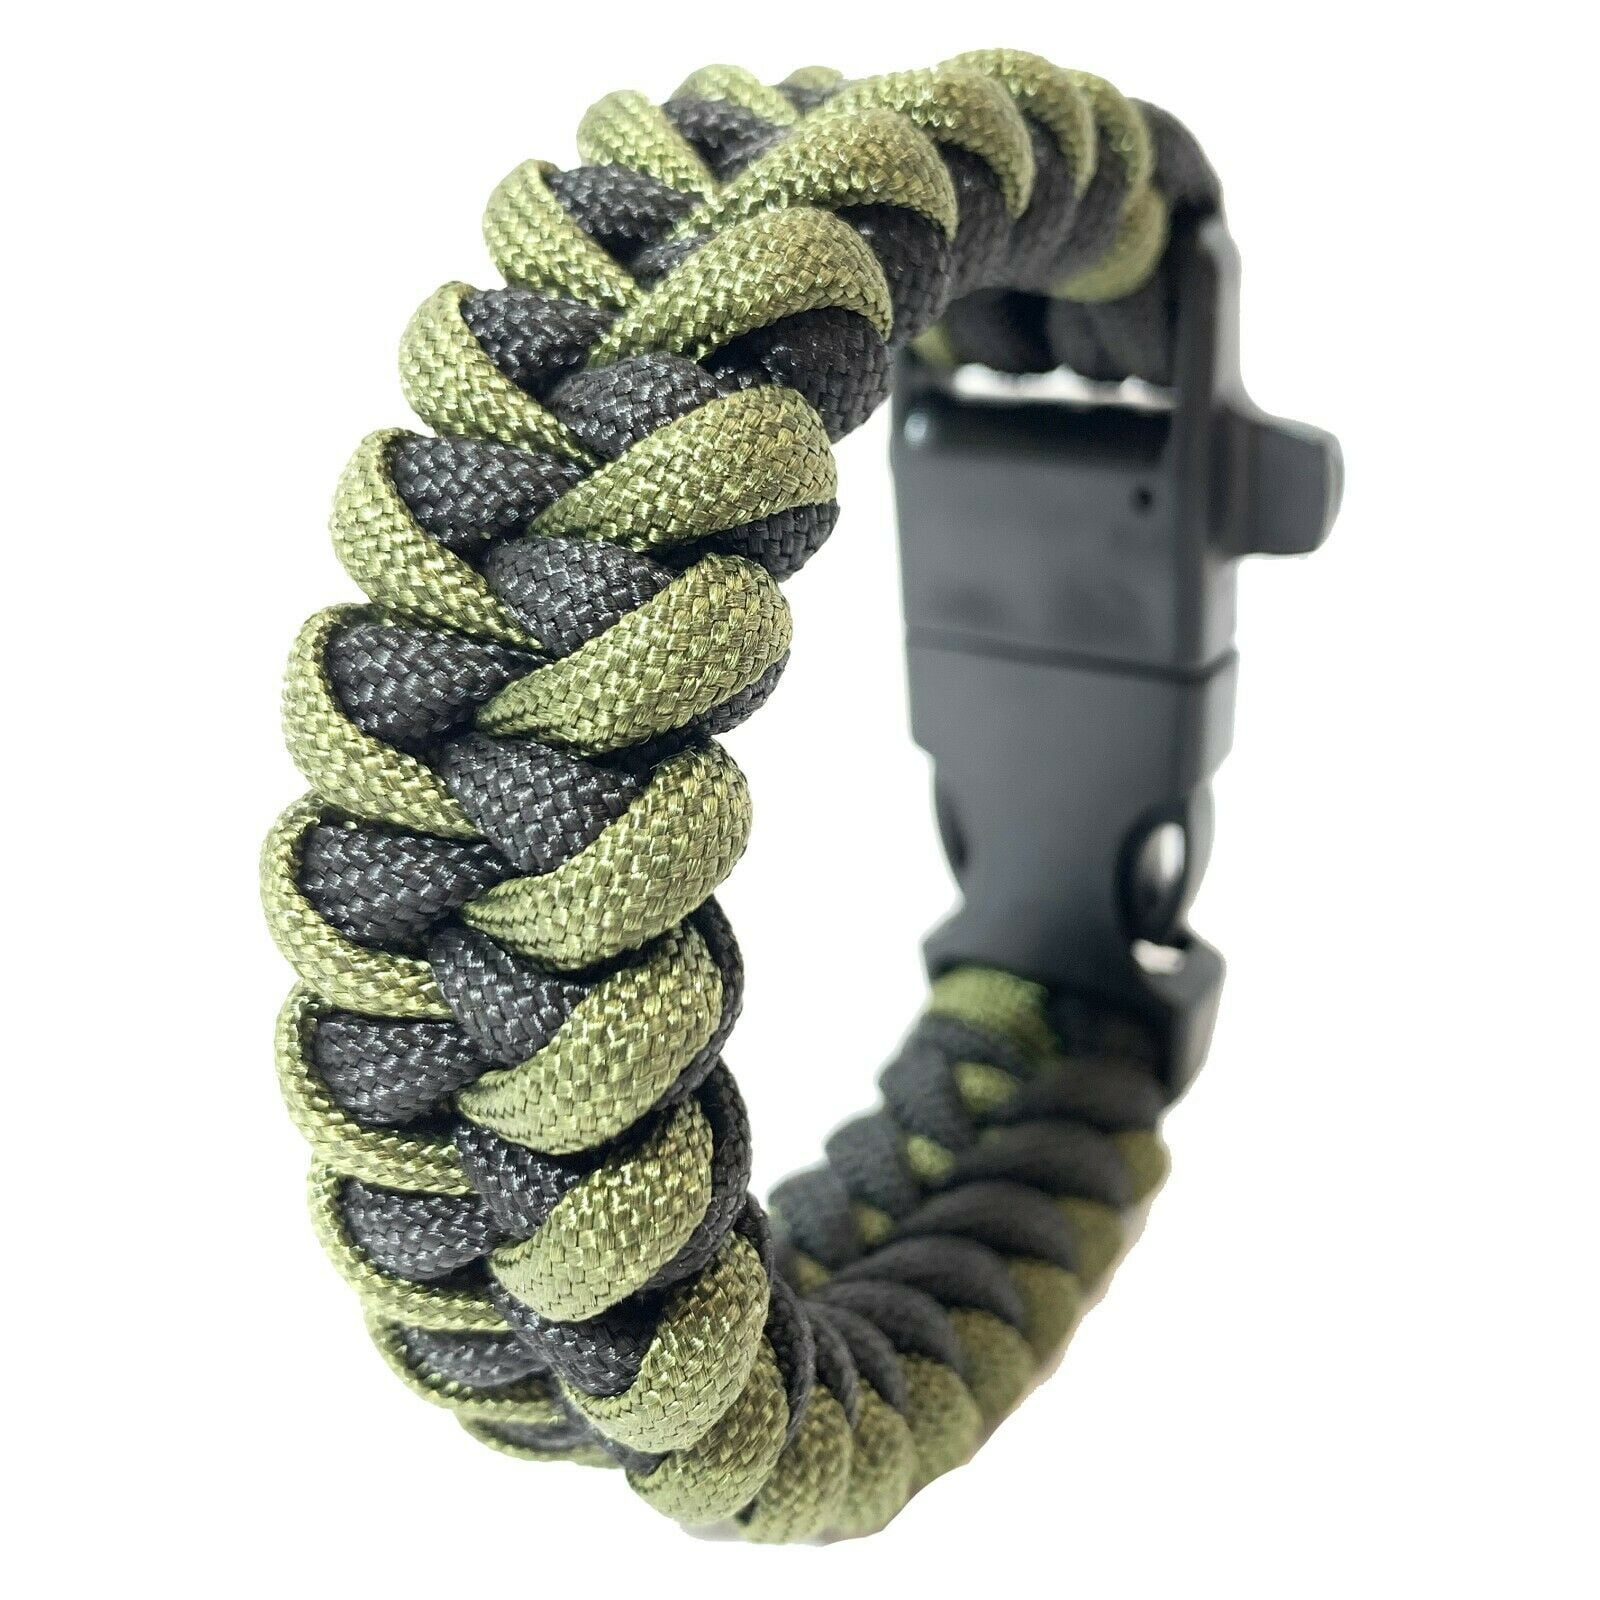 Kupra green black survival bracelet